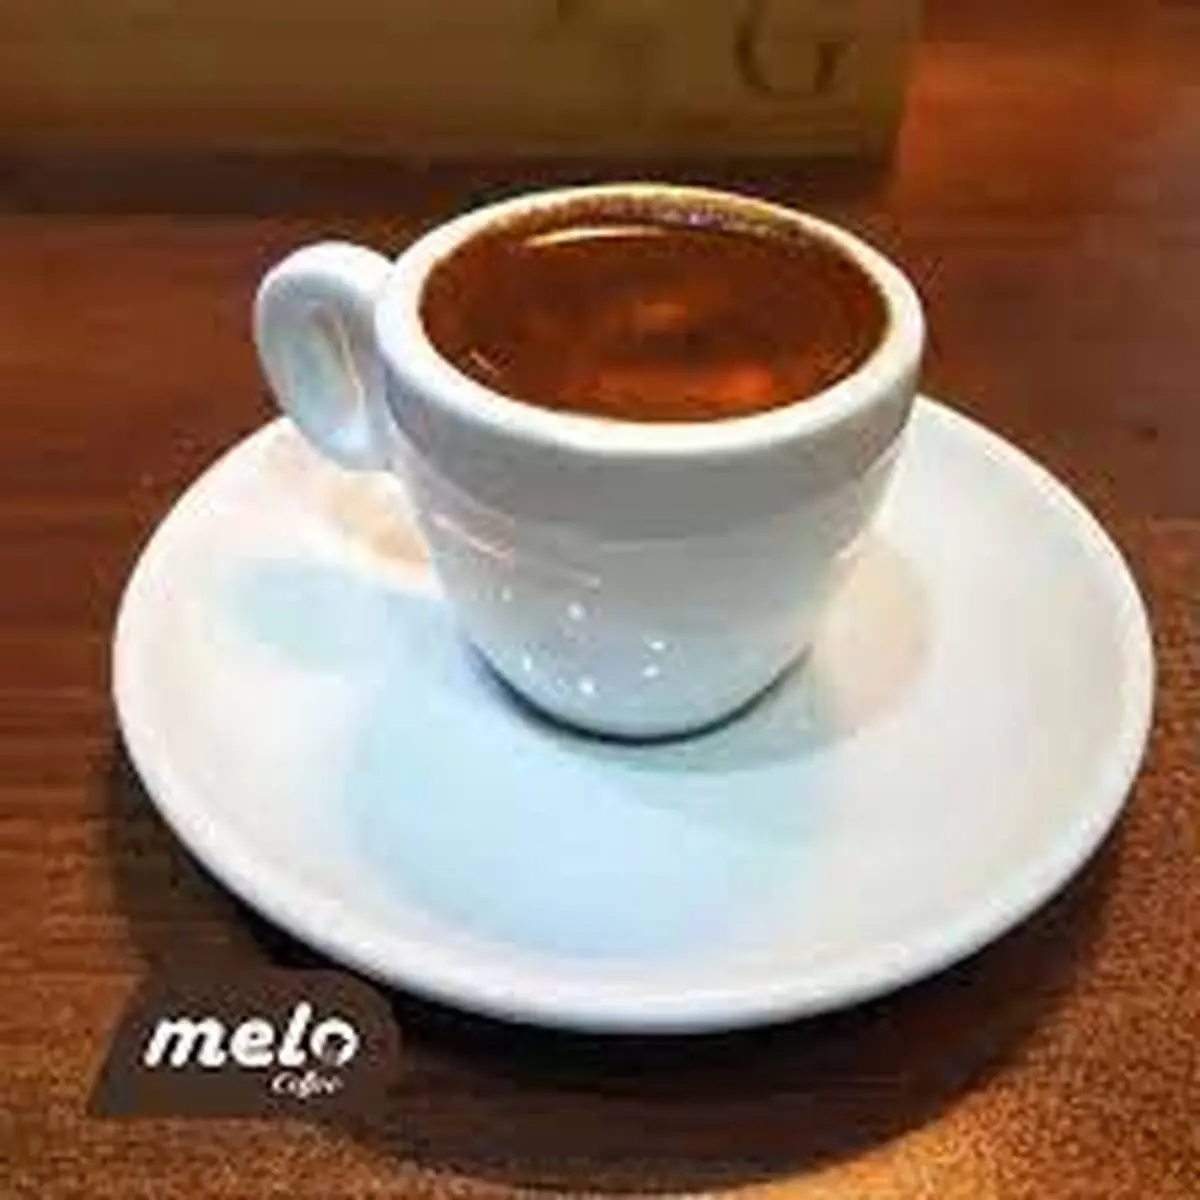 درست کردن یک قهوه متفاوت | طرز درست کردن قهوه یونانی 